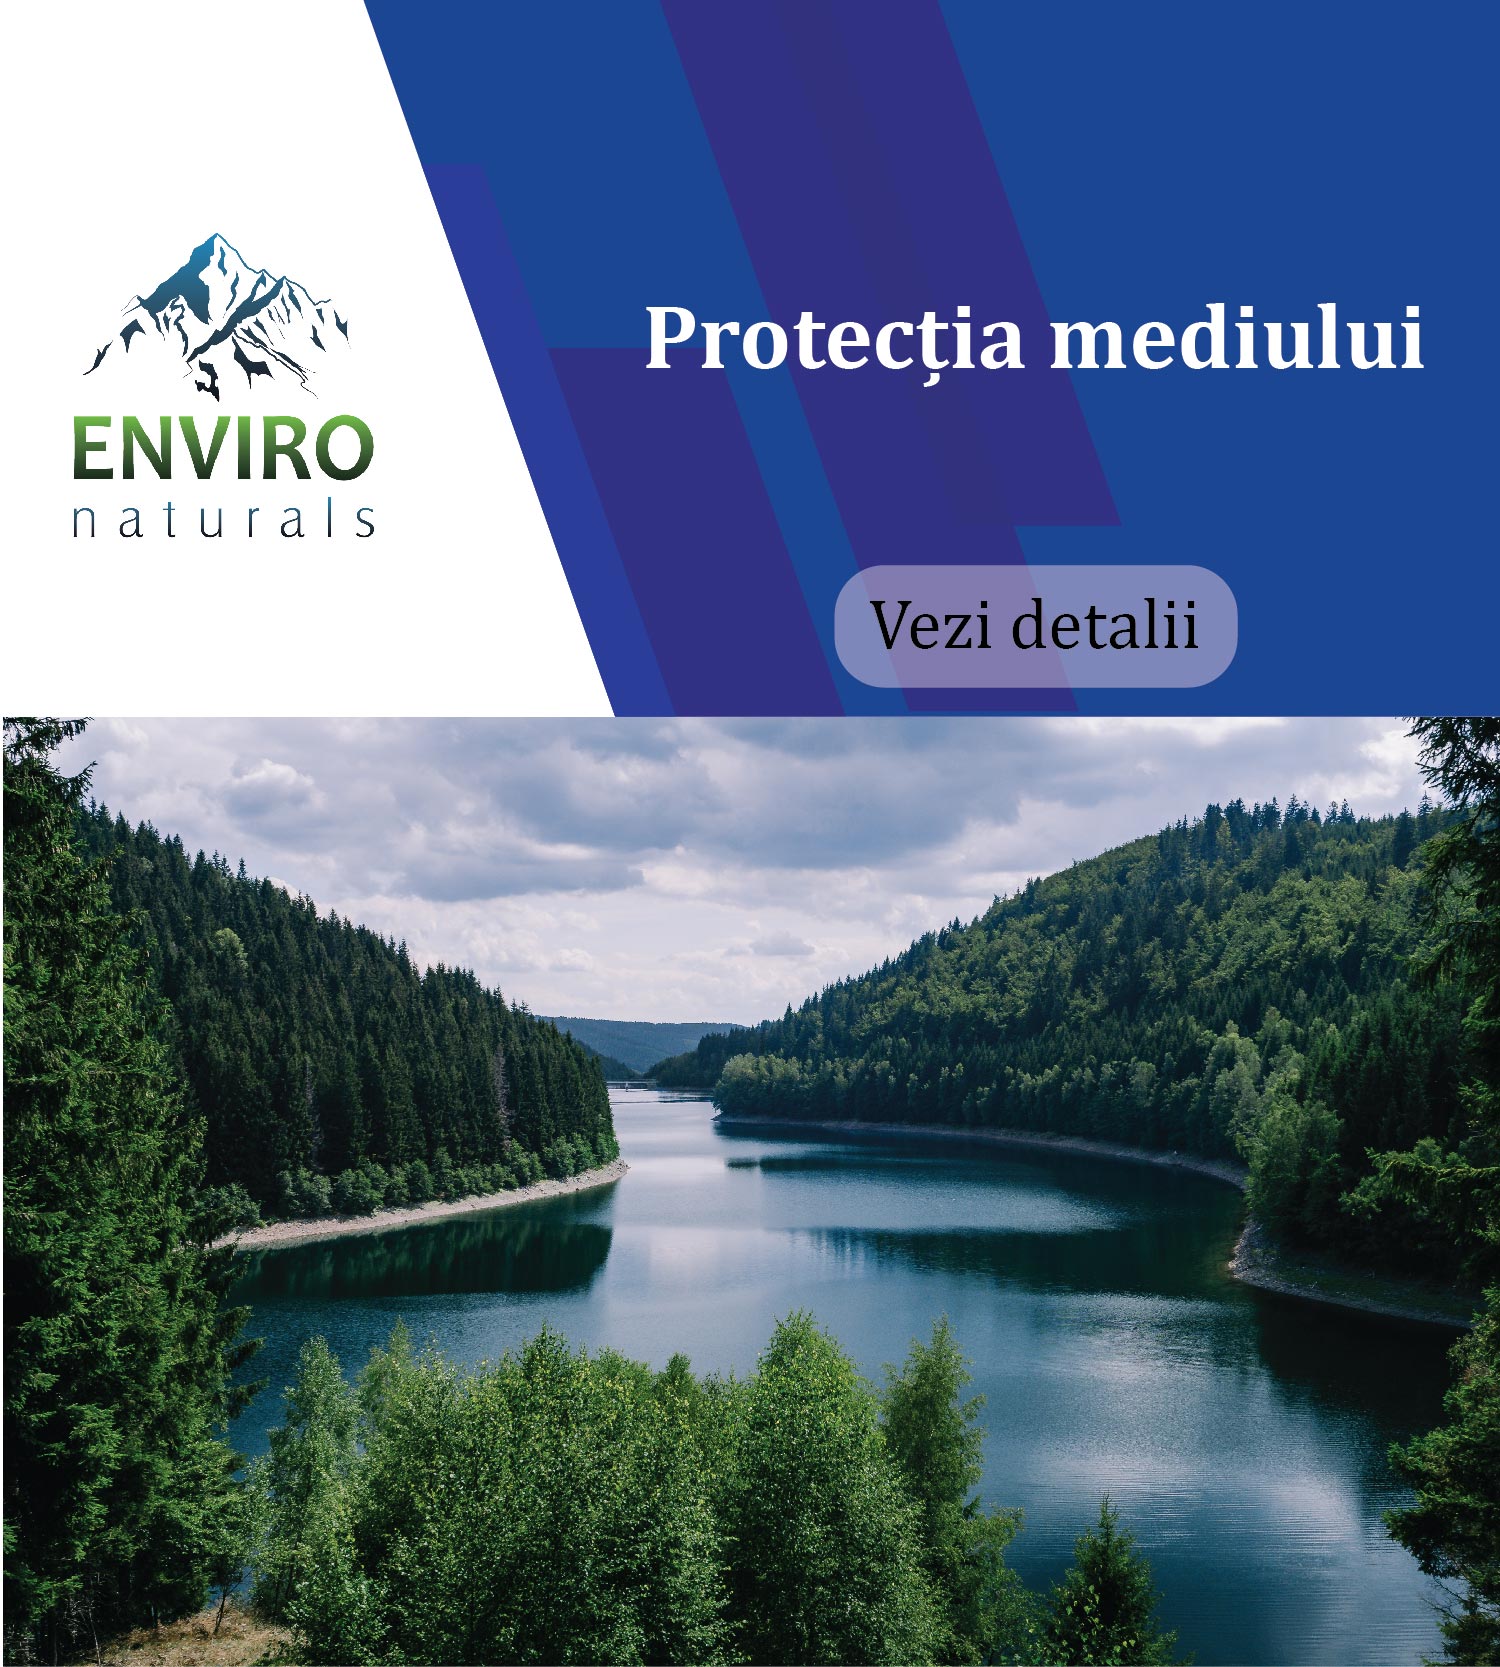 Protectia mediului